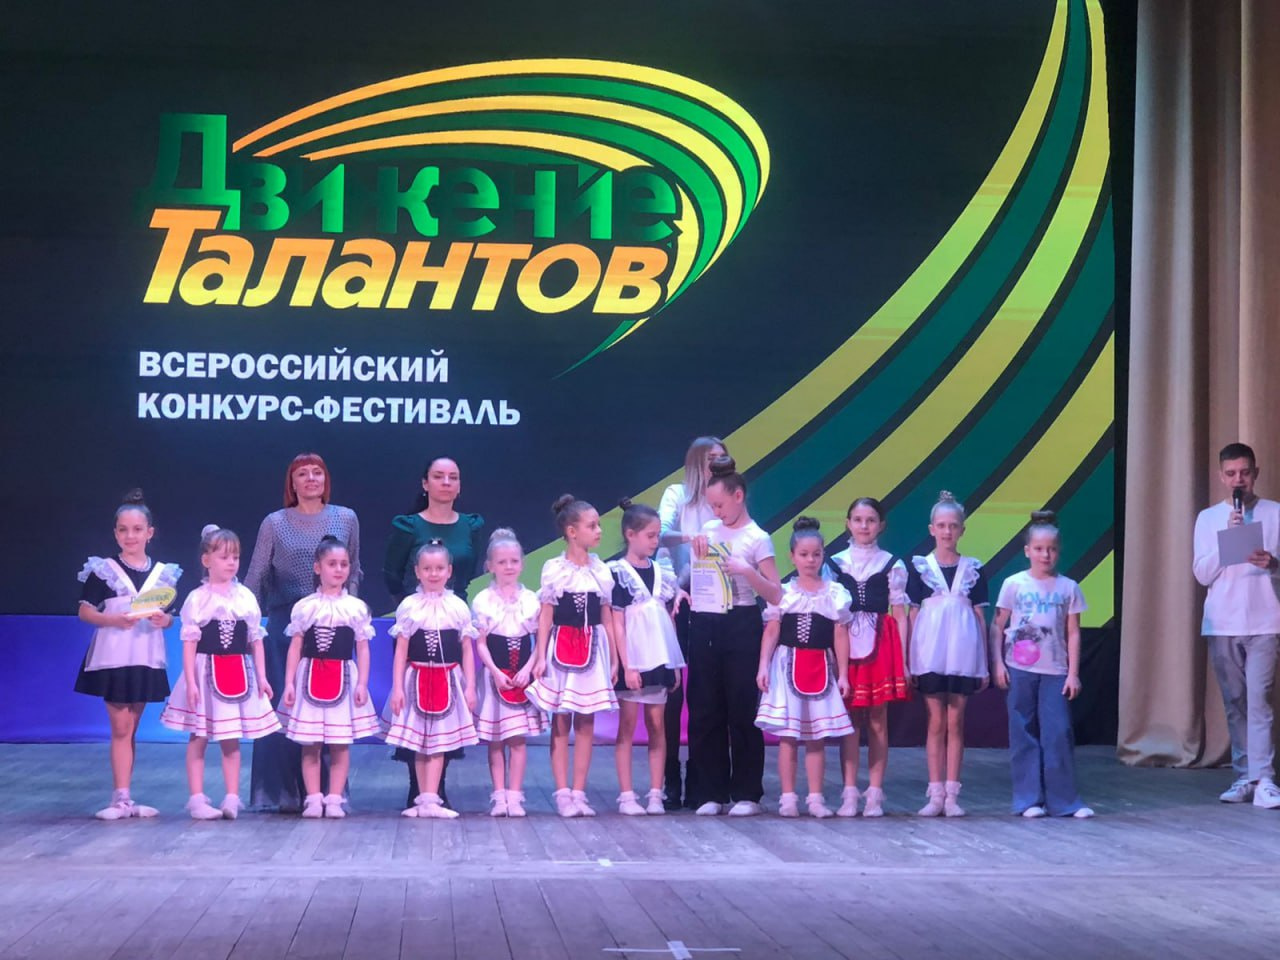 Армавирцы стали лауреатами Всероссийского конкурса-фестиваля «Движение талантов»